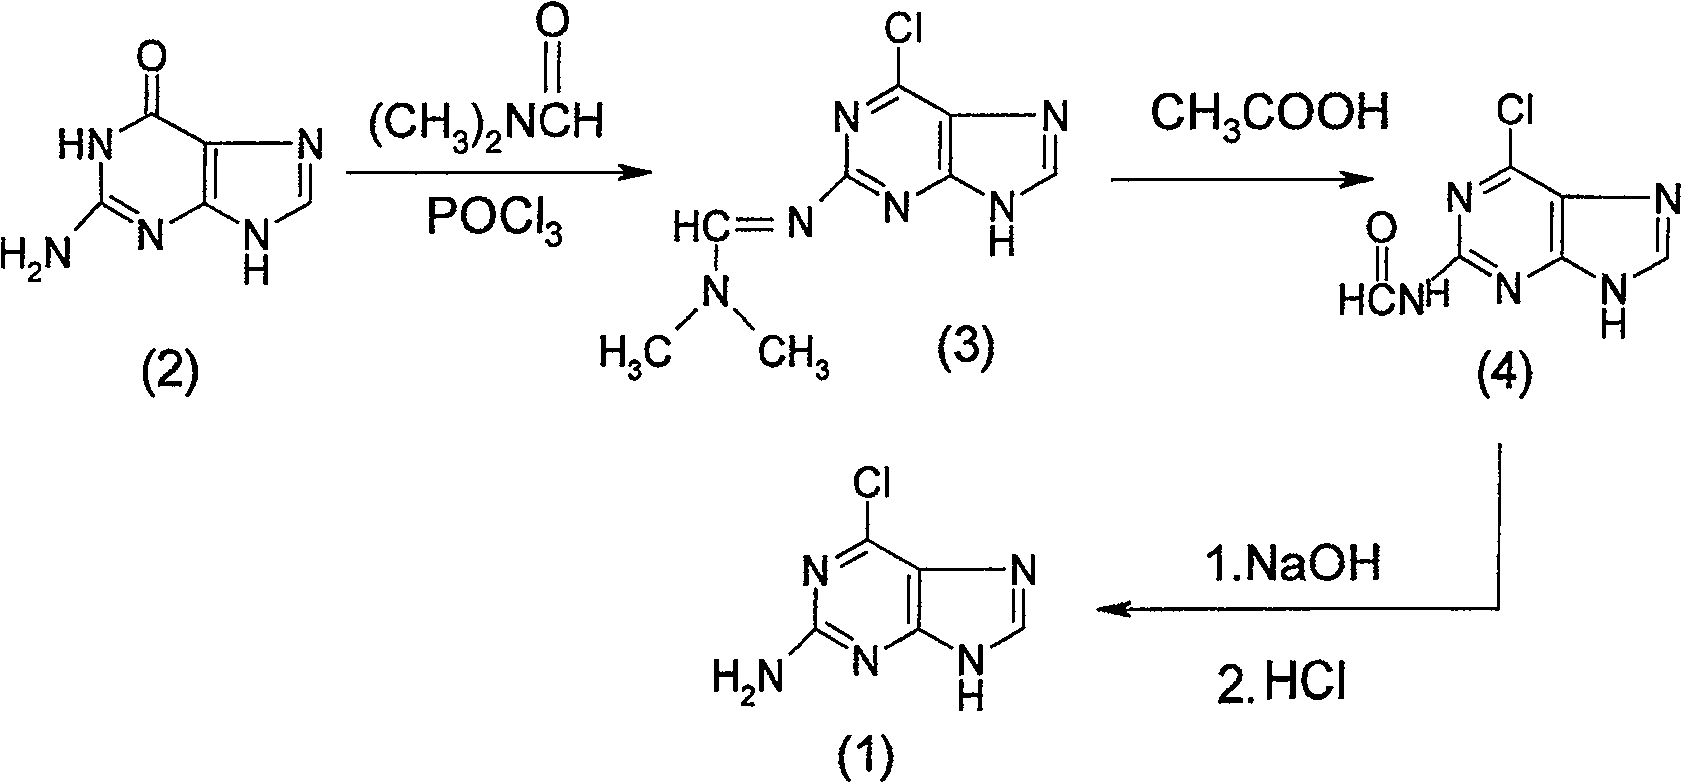 Method for synthesizing 2-amido-6-chloropurine